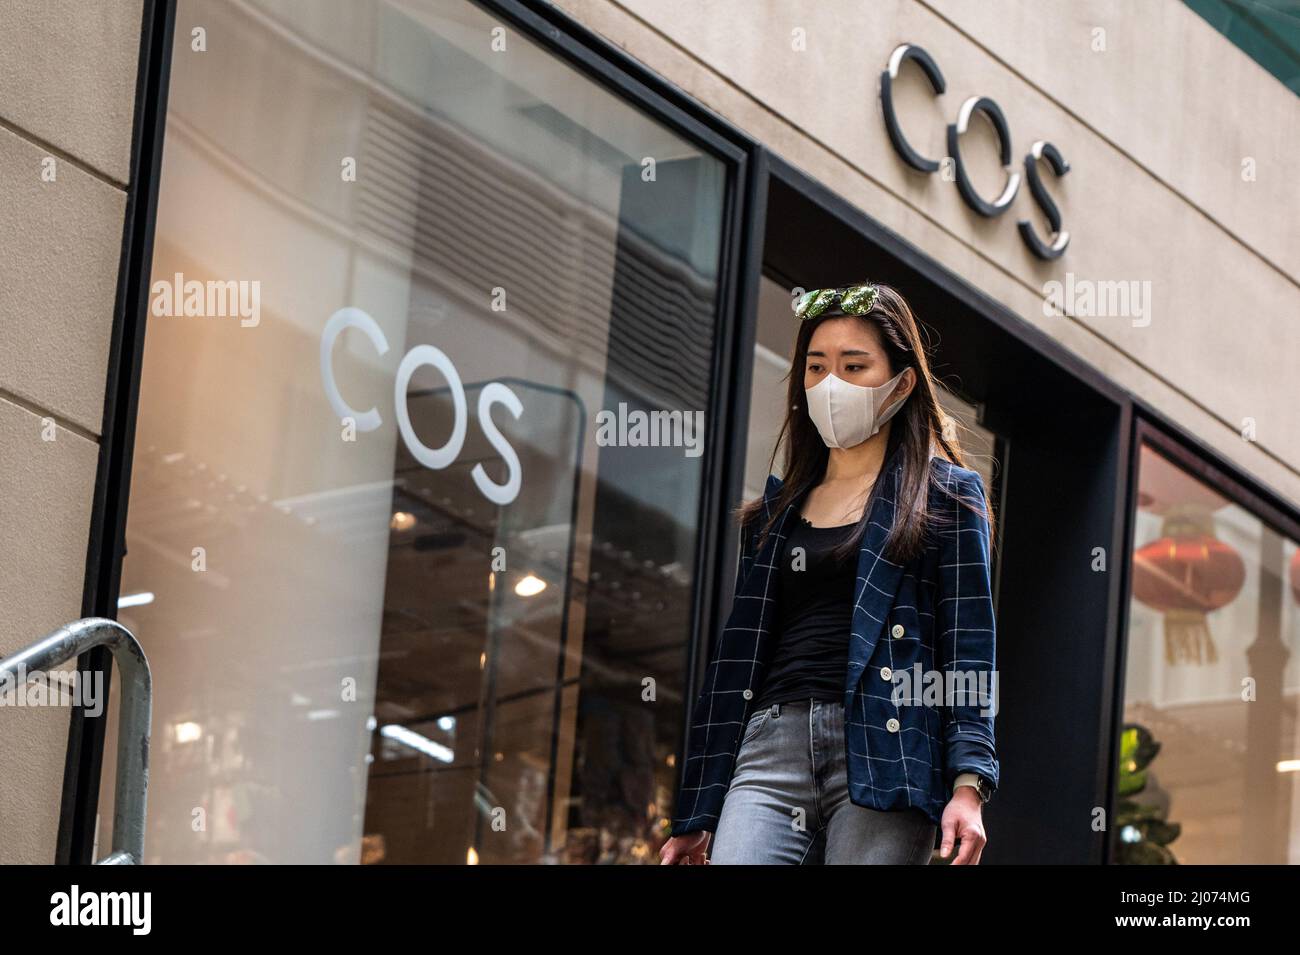 Une femme portant un masque chirurgical se promène près d'un magasin COS  dans le quartier central des affaires de Hong Kong. Selon l'analyse  économique du Gouvernement de Hong Kong, le secteur du